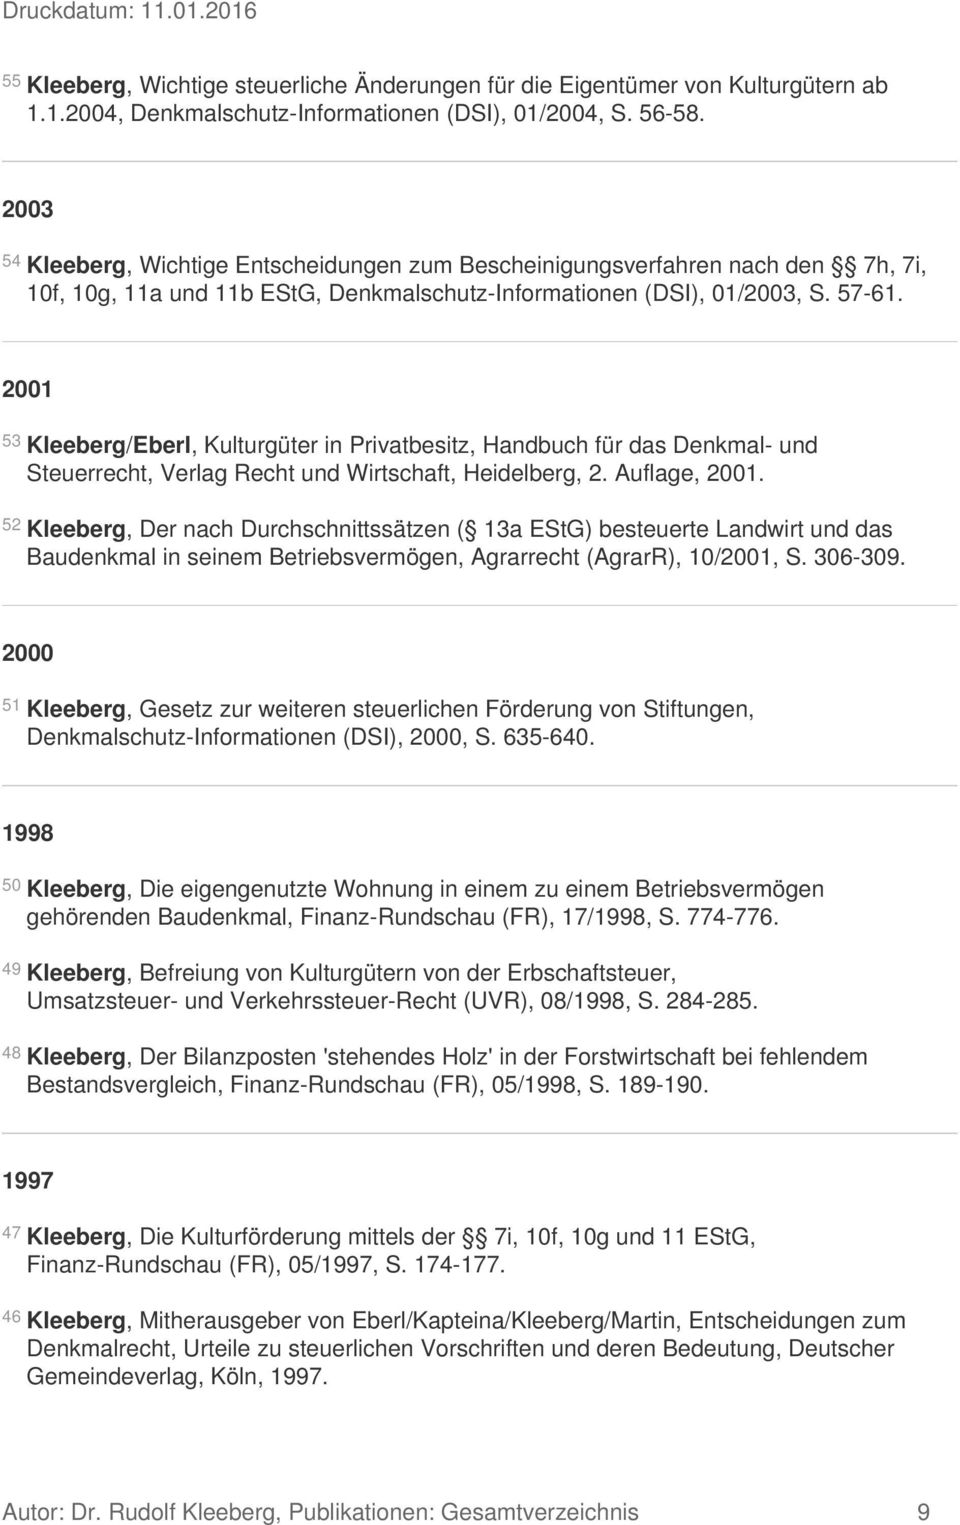 2001 53 Kleeberg/Eberl, Kulturgüter in Privatbesitz, Handbuch für das Denkmal- und Steuerrecht, Verlag Recht und Wirtschaft, Heidelberg, 2. Auflage, 2001.